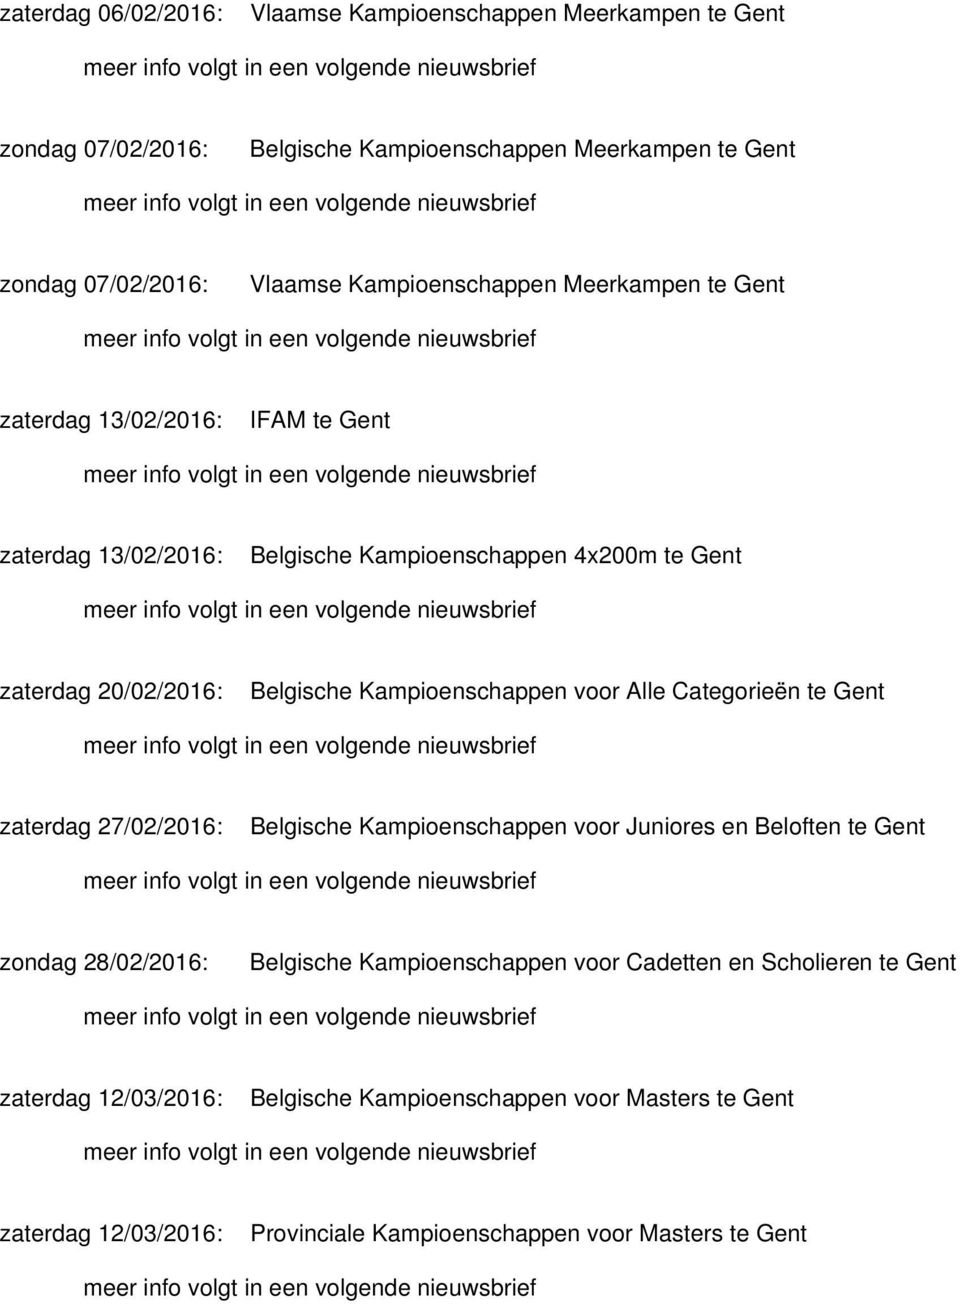 Kampioenschappen voor Alle Categorieën te Gent zaterdag 27/02/2016: Belgische Kampioenschappen voor Juniores en Beloften te Gent zondag 28/02/2016: Belgische